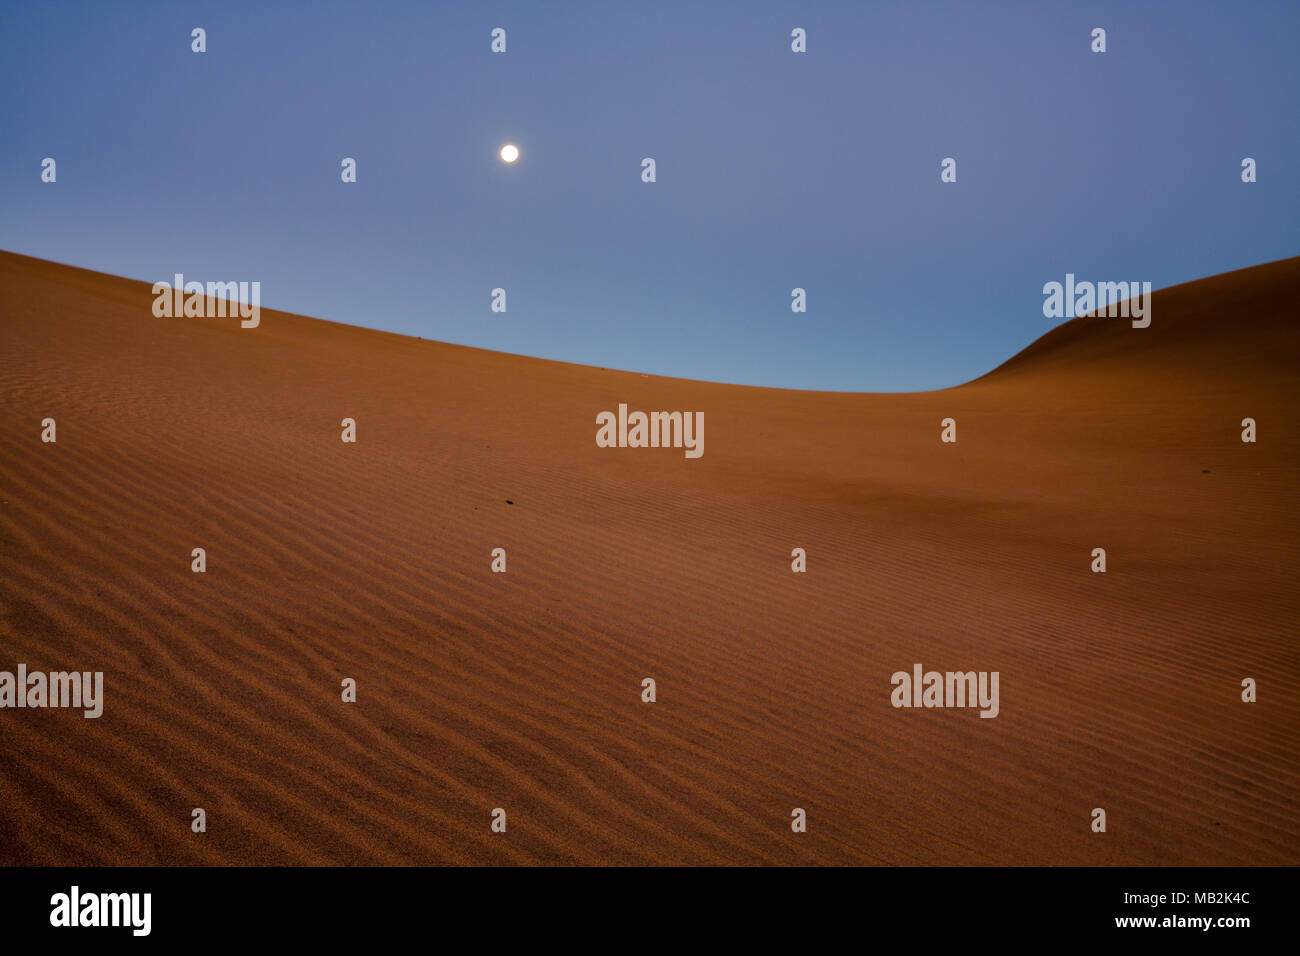 Moony landscape on sand dunes. Stock Photo